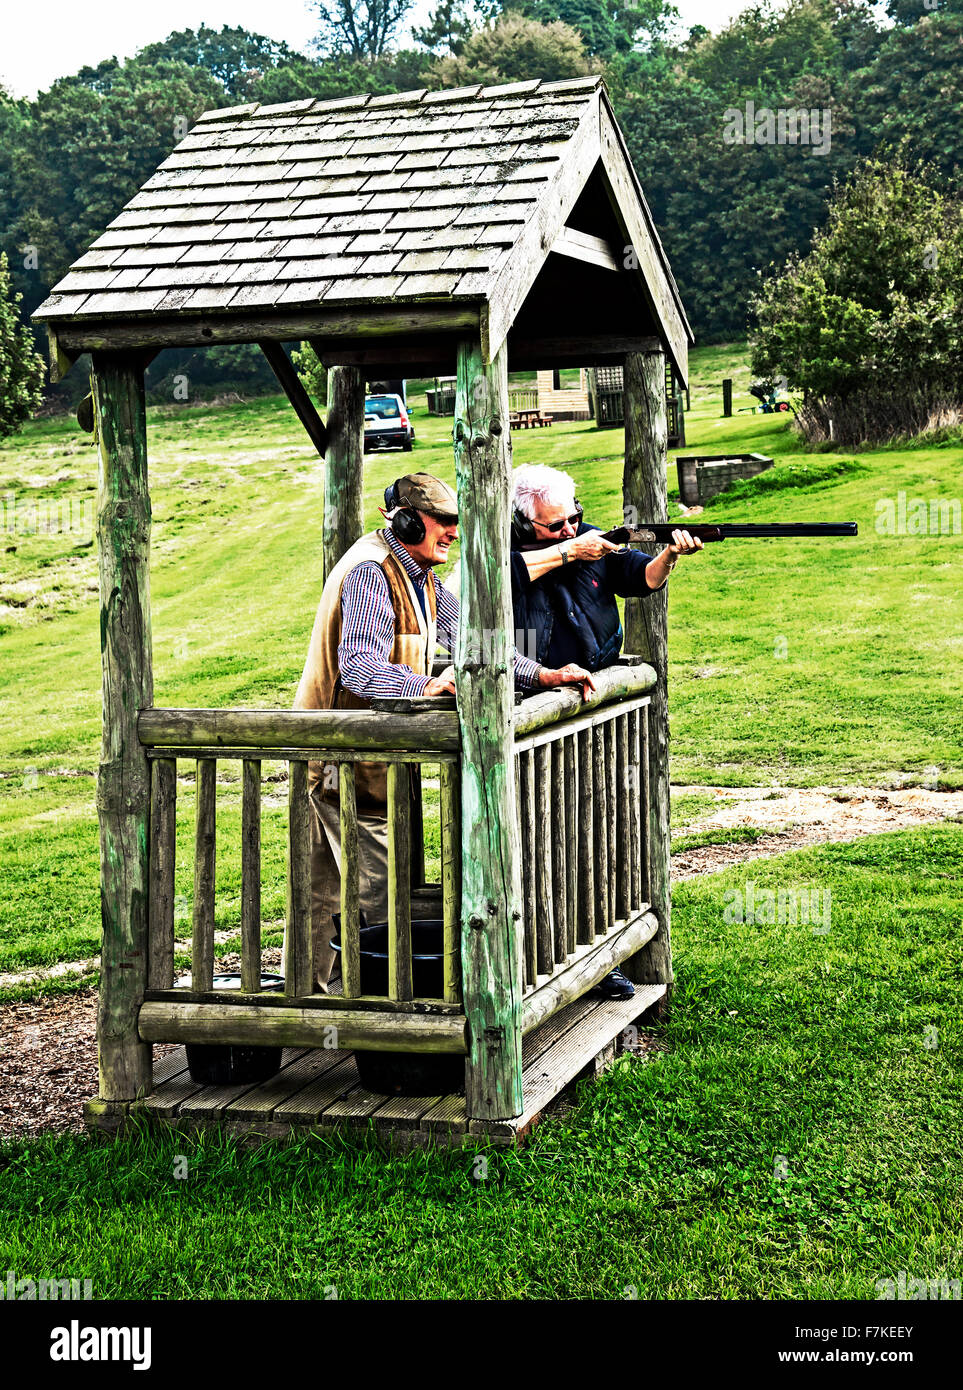 Woman Clay Pigeon Shooting with Instruction; Frau beim Tontaubenschießen mit Unterweisung Stock Photo